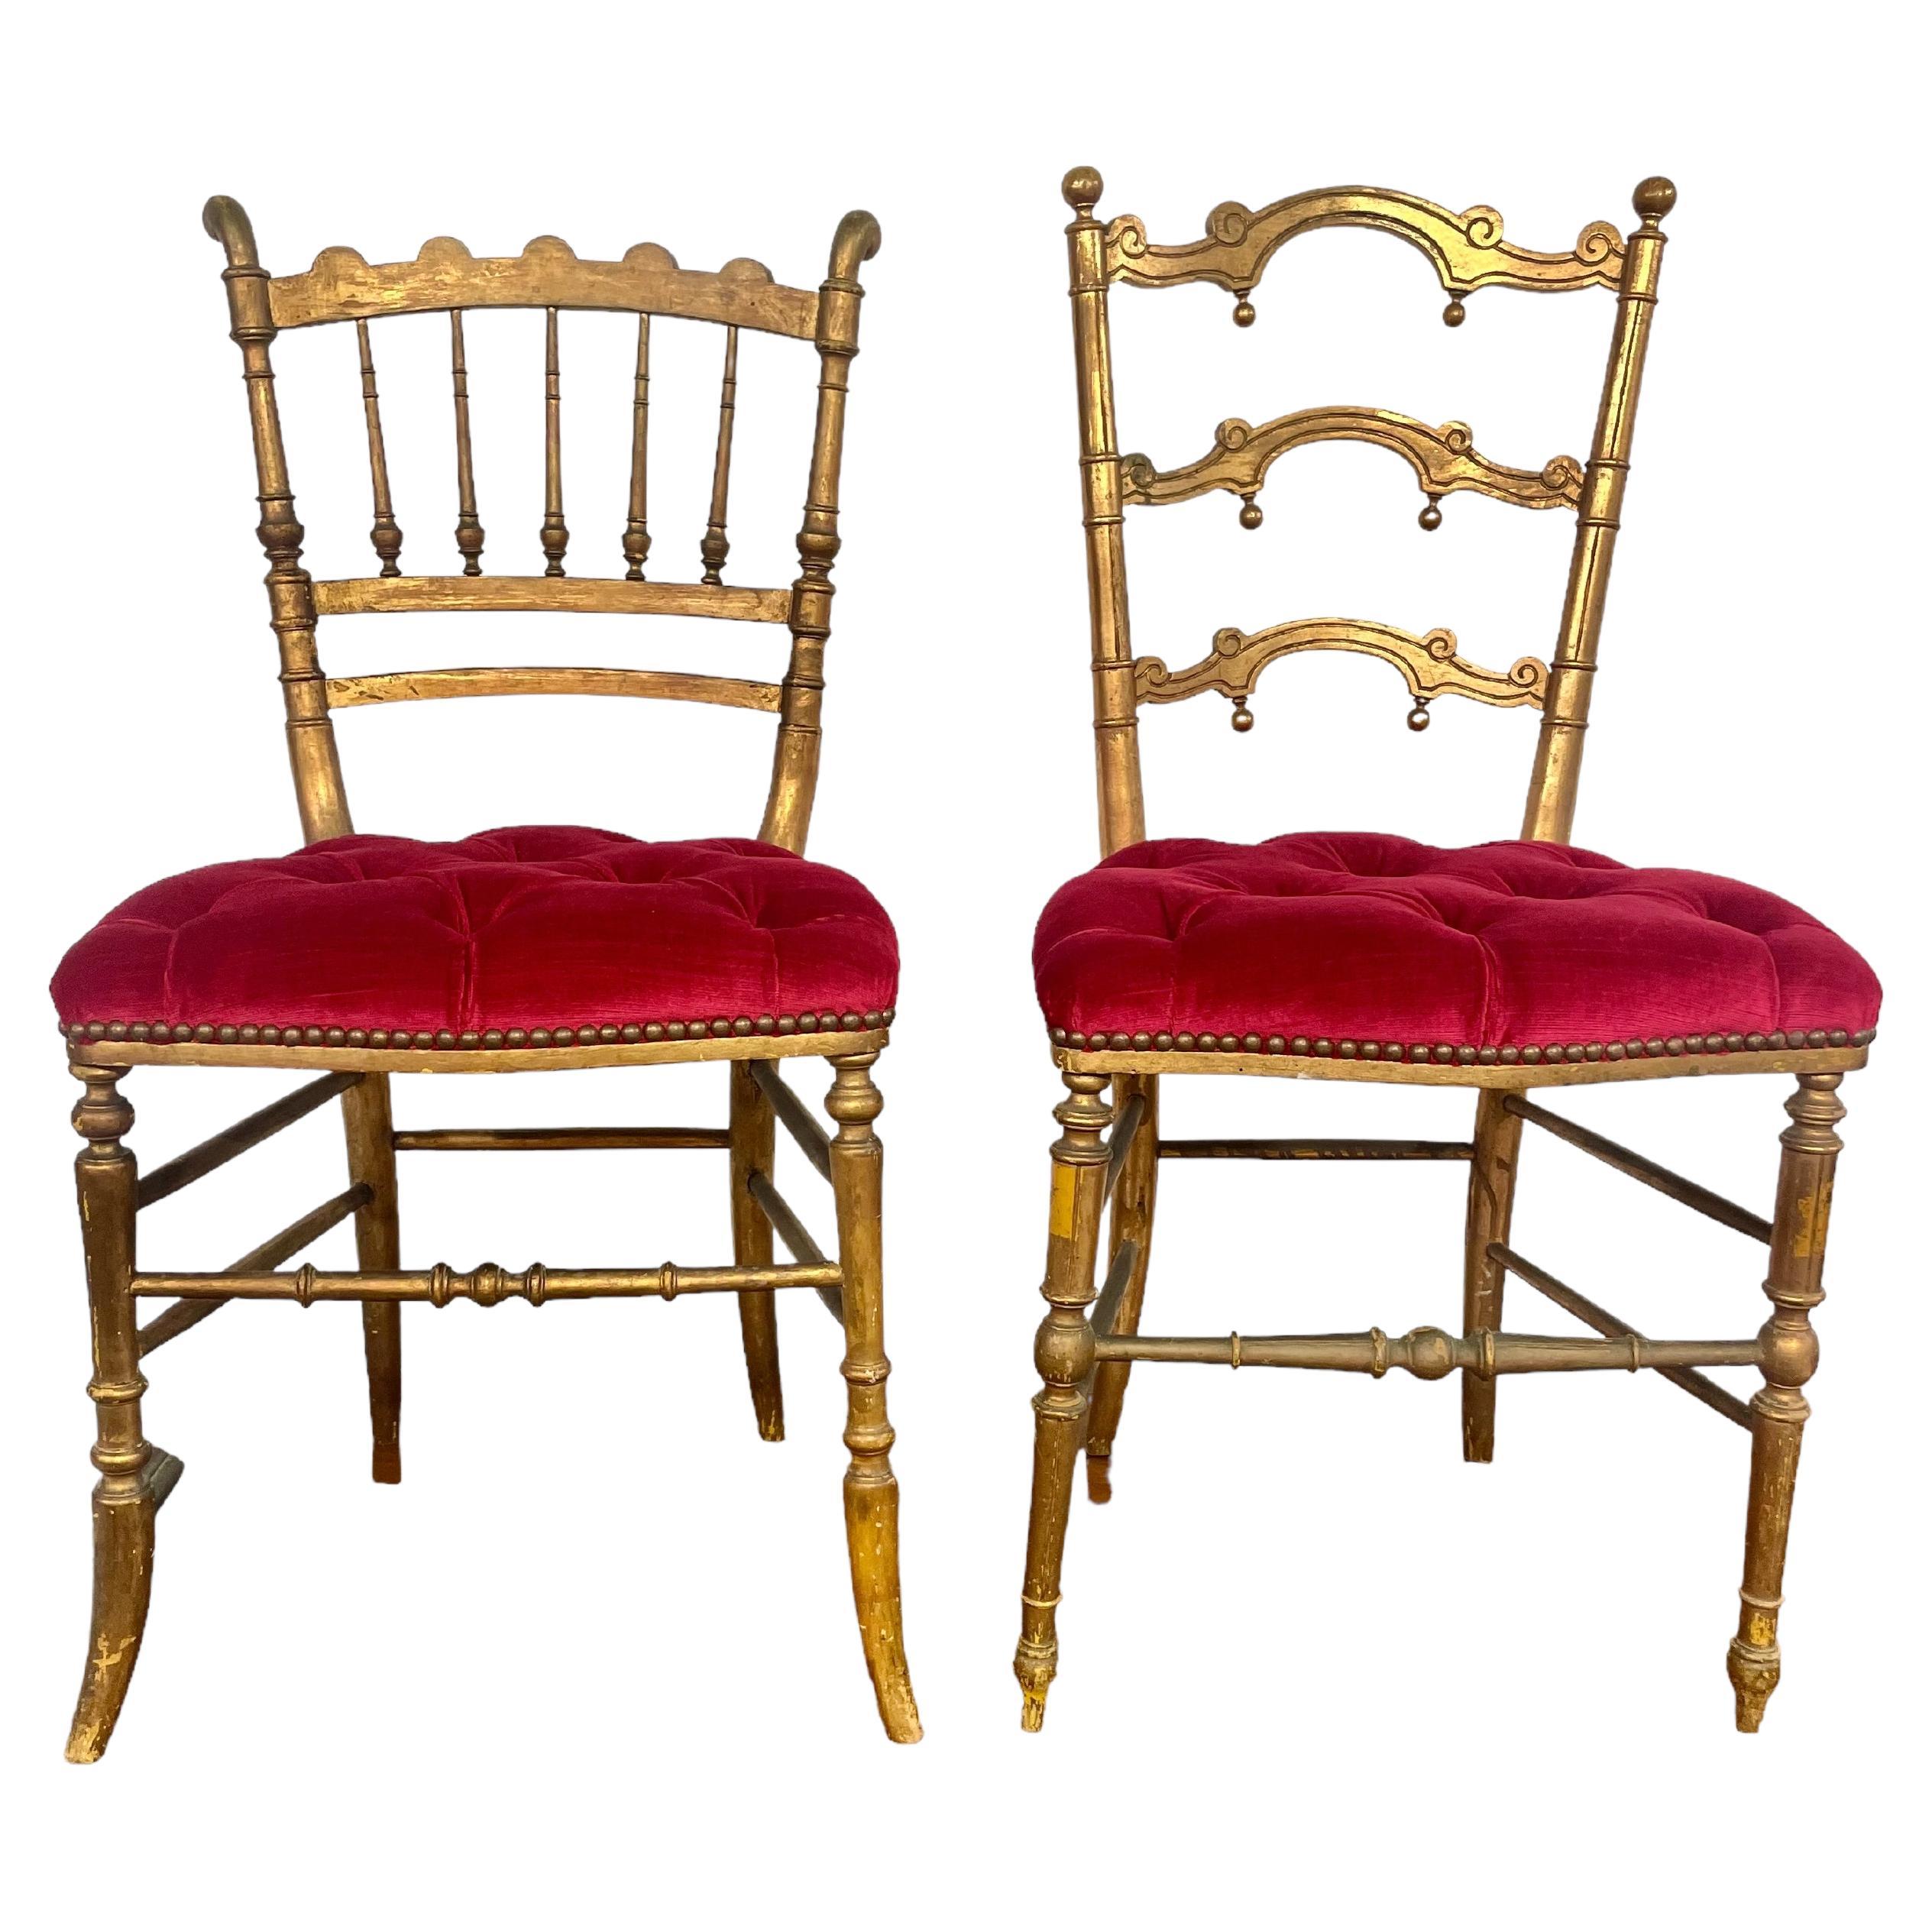 Ensemble de 2 chaises d'opéra en bois doré datant des années 1880 